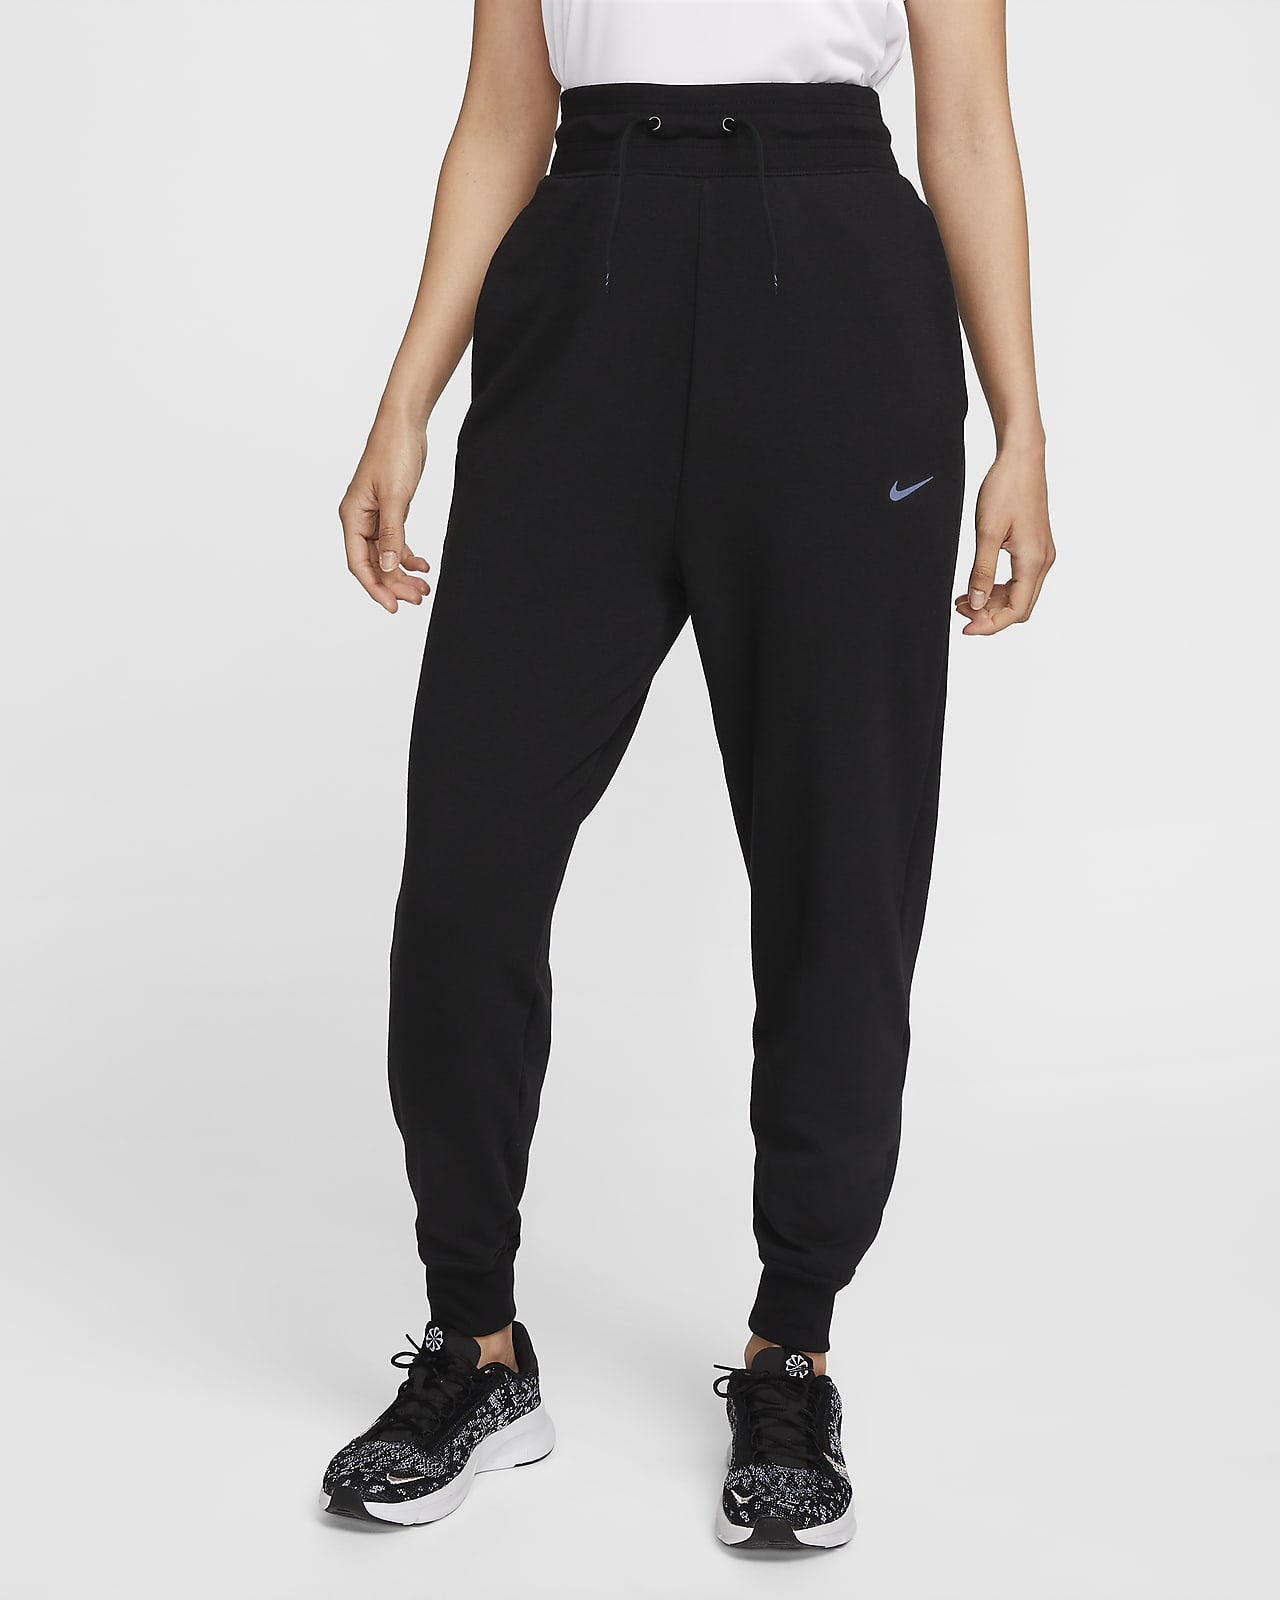 กางเกงซ้อมกีฬาผ้าเฟรนช์เทรีเอวสูงผู้หญิง 7/8 ส่วน 
Nike Dri-FIT One